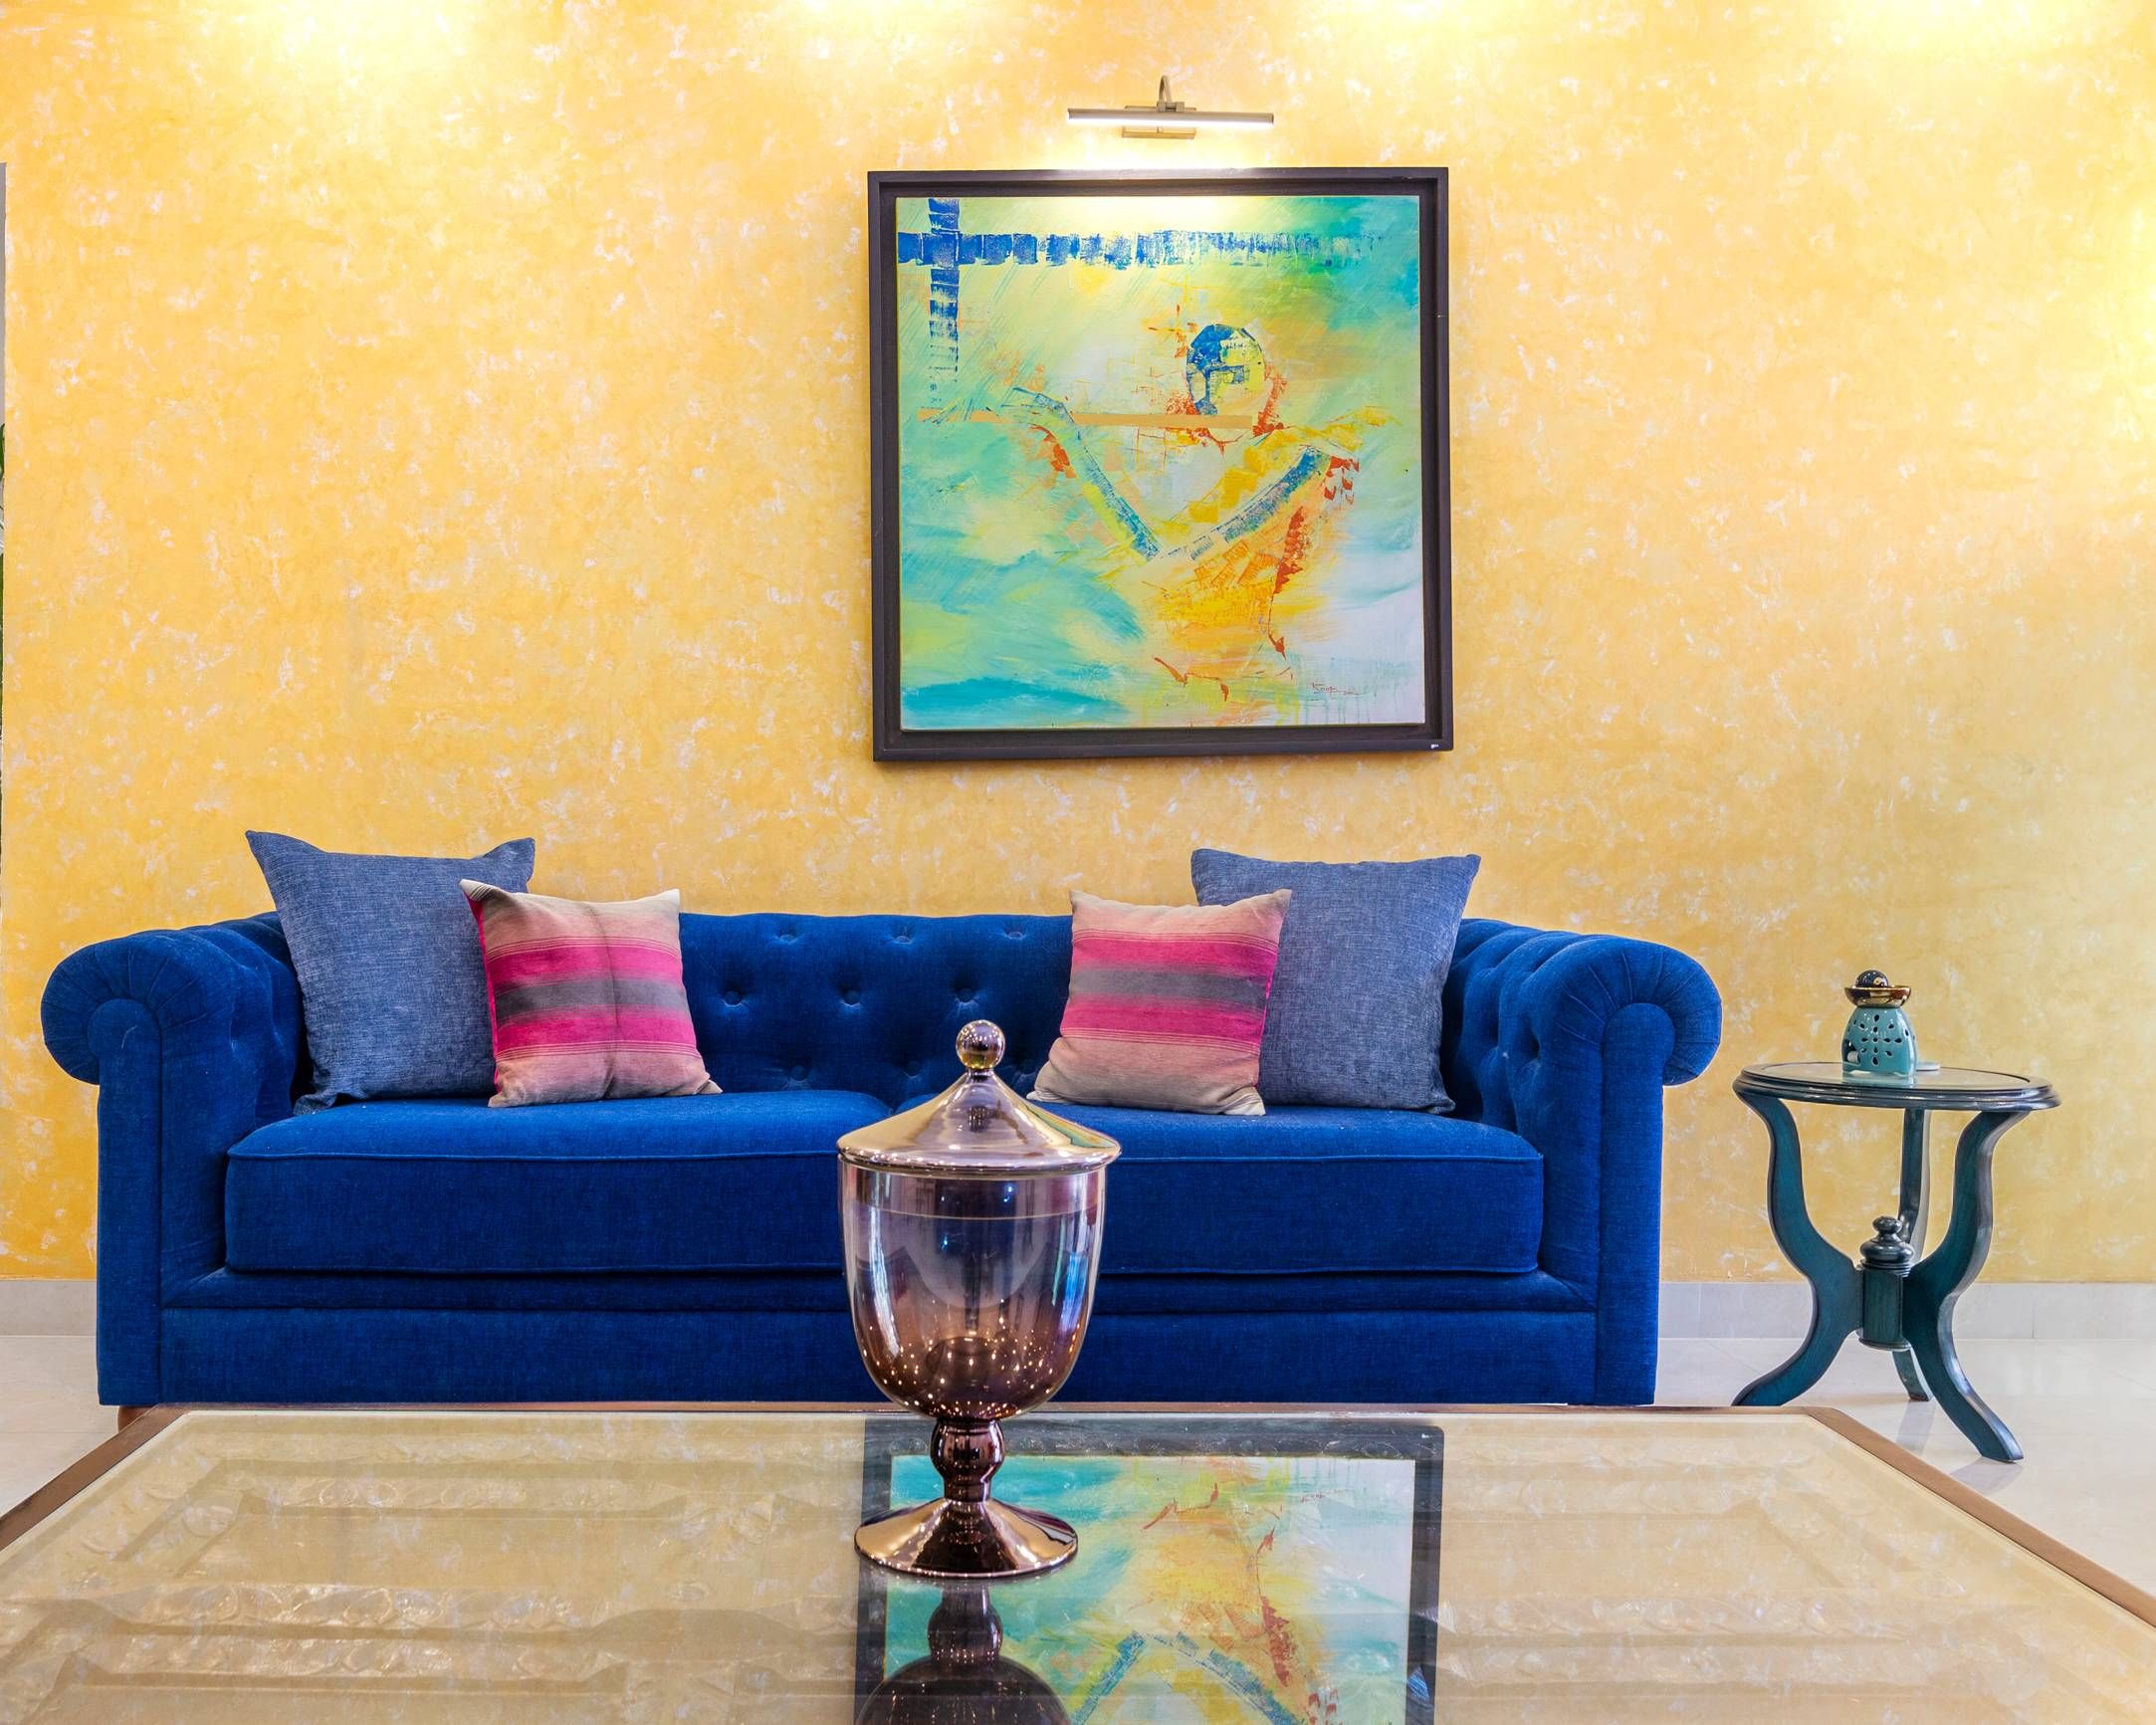 Modern Yellow Living Room Wallpaper Design With Framed Art